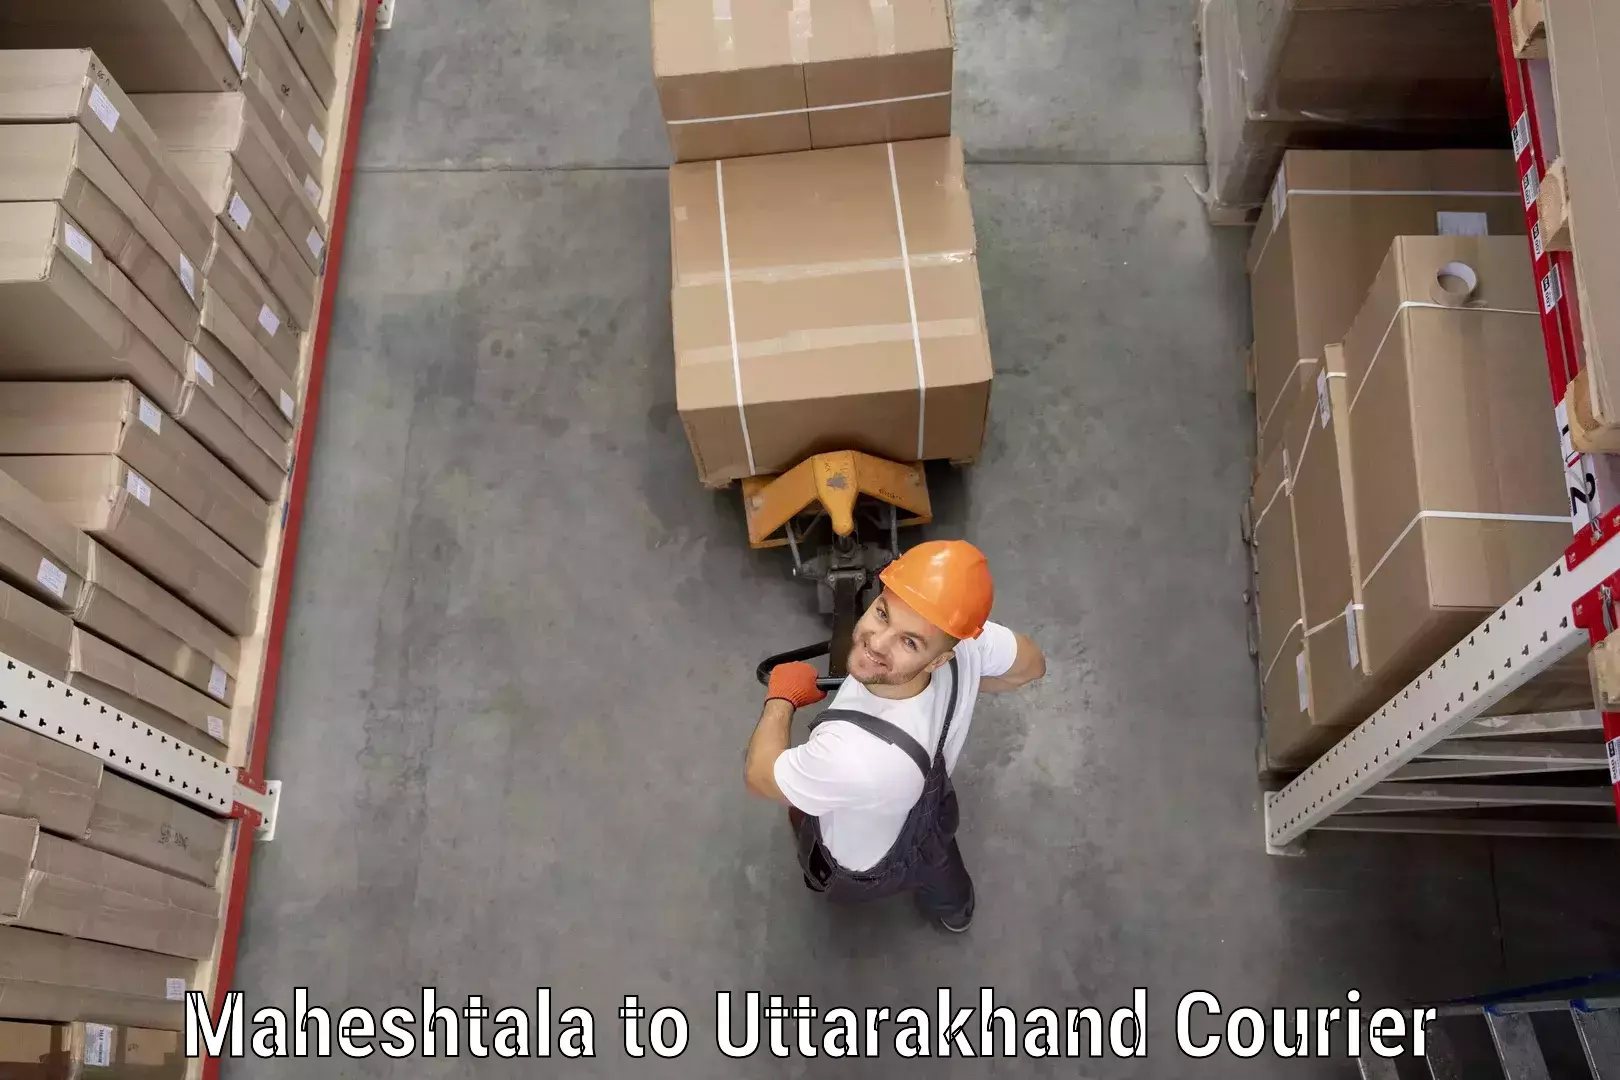 Cargo courier service Maheshtala to Kashipur